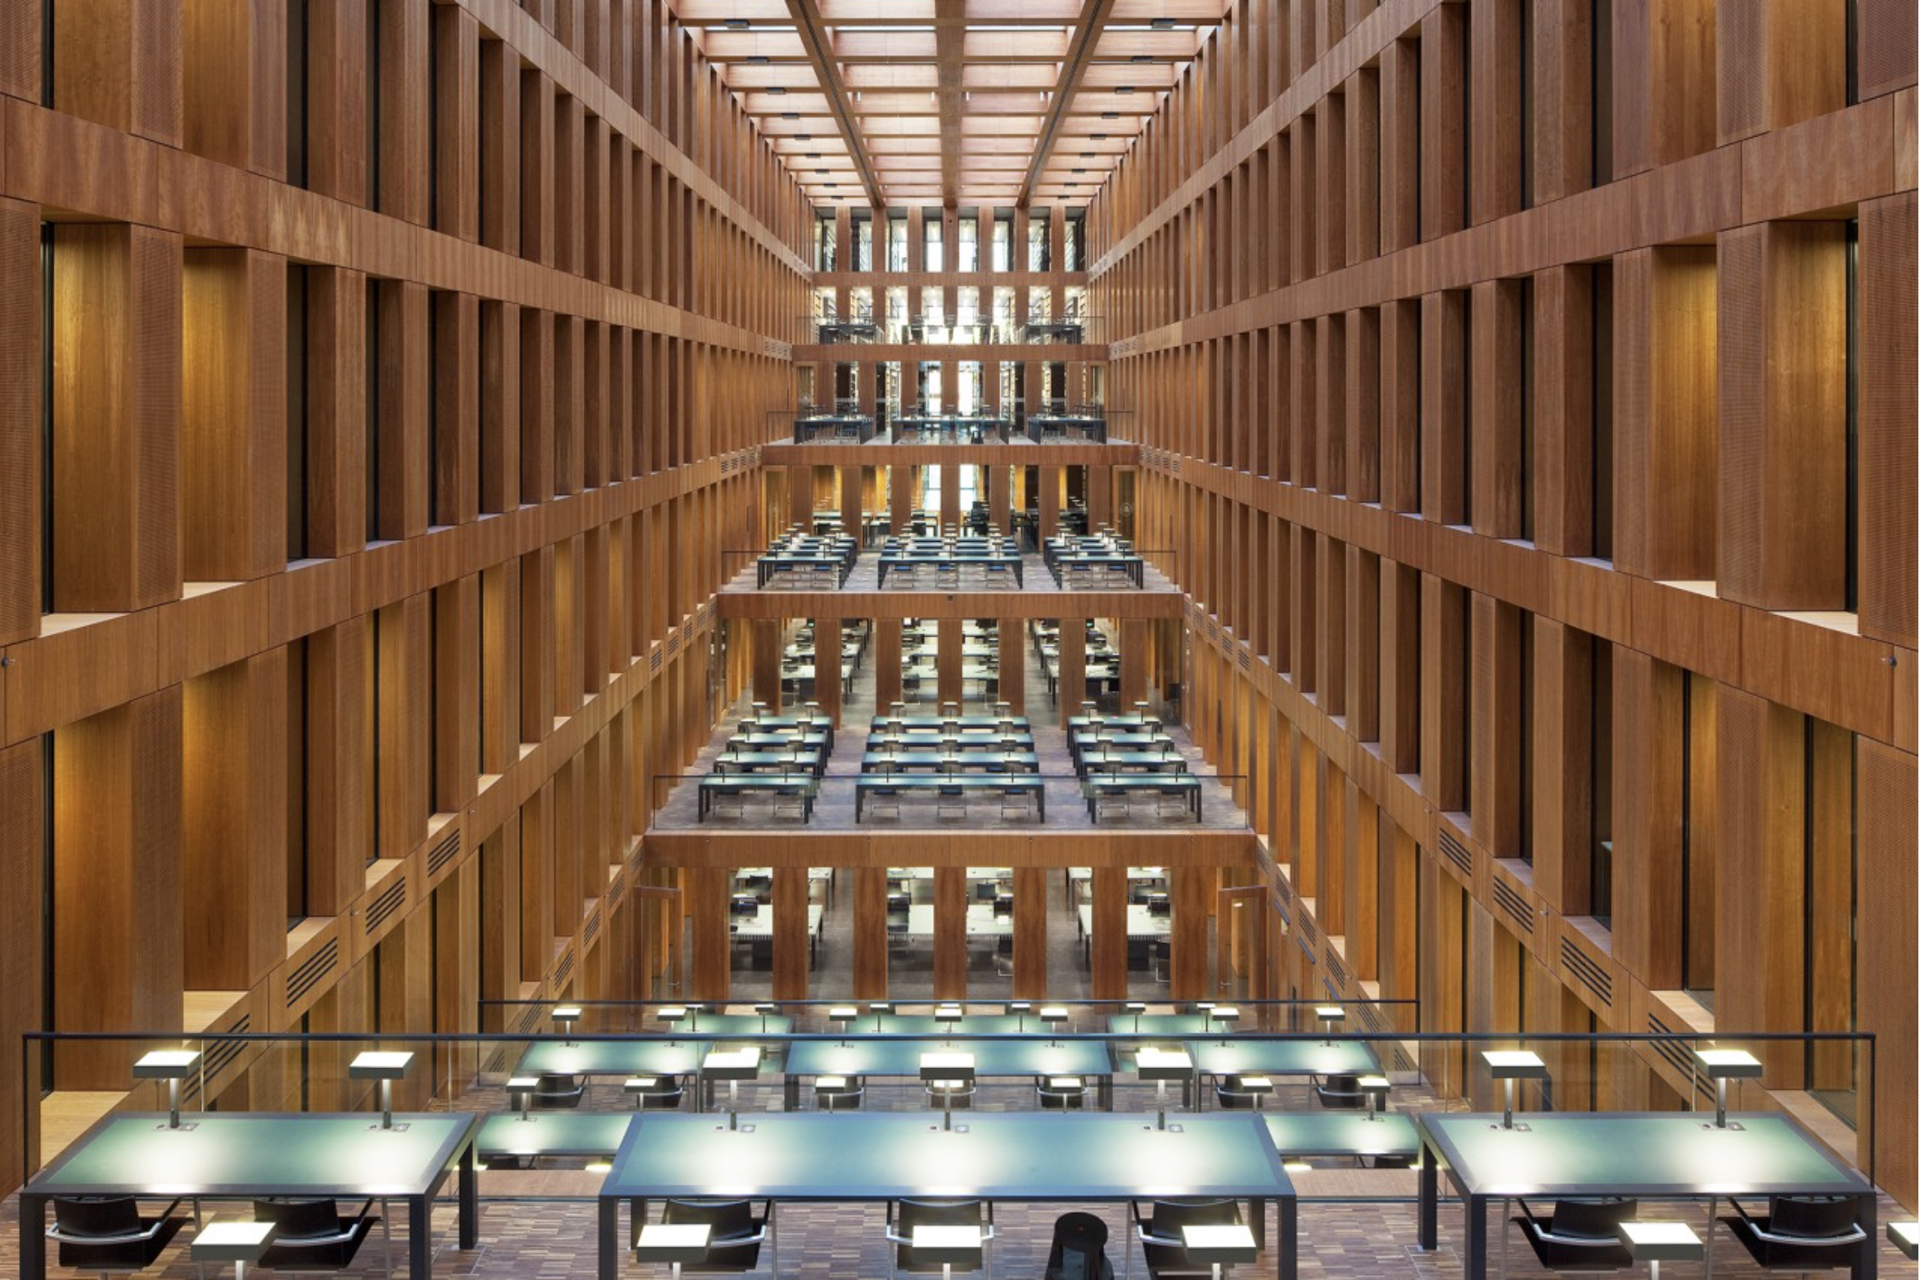 Jacob-Und-Wilhelm-Grimm Library, Berlin, Germany, Architect: Max Dudler by Reinhard Gorner